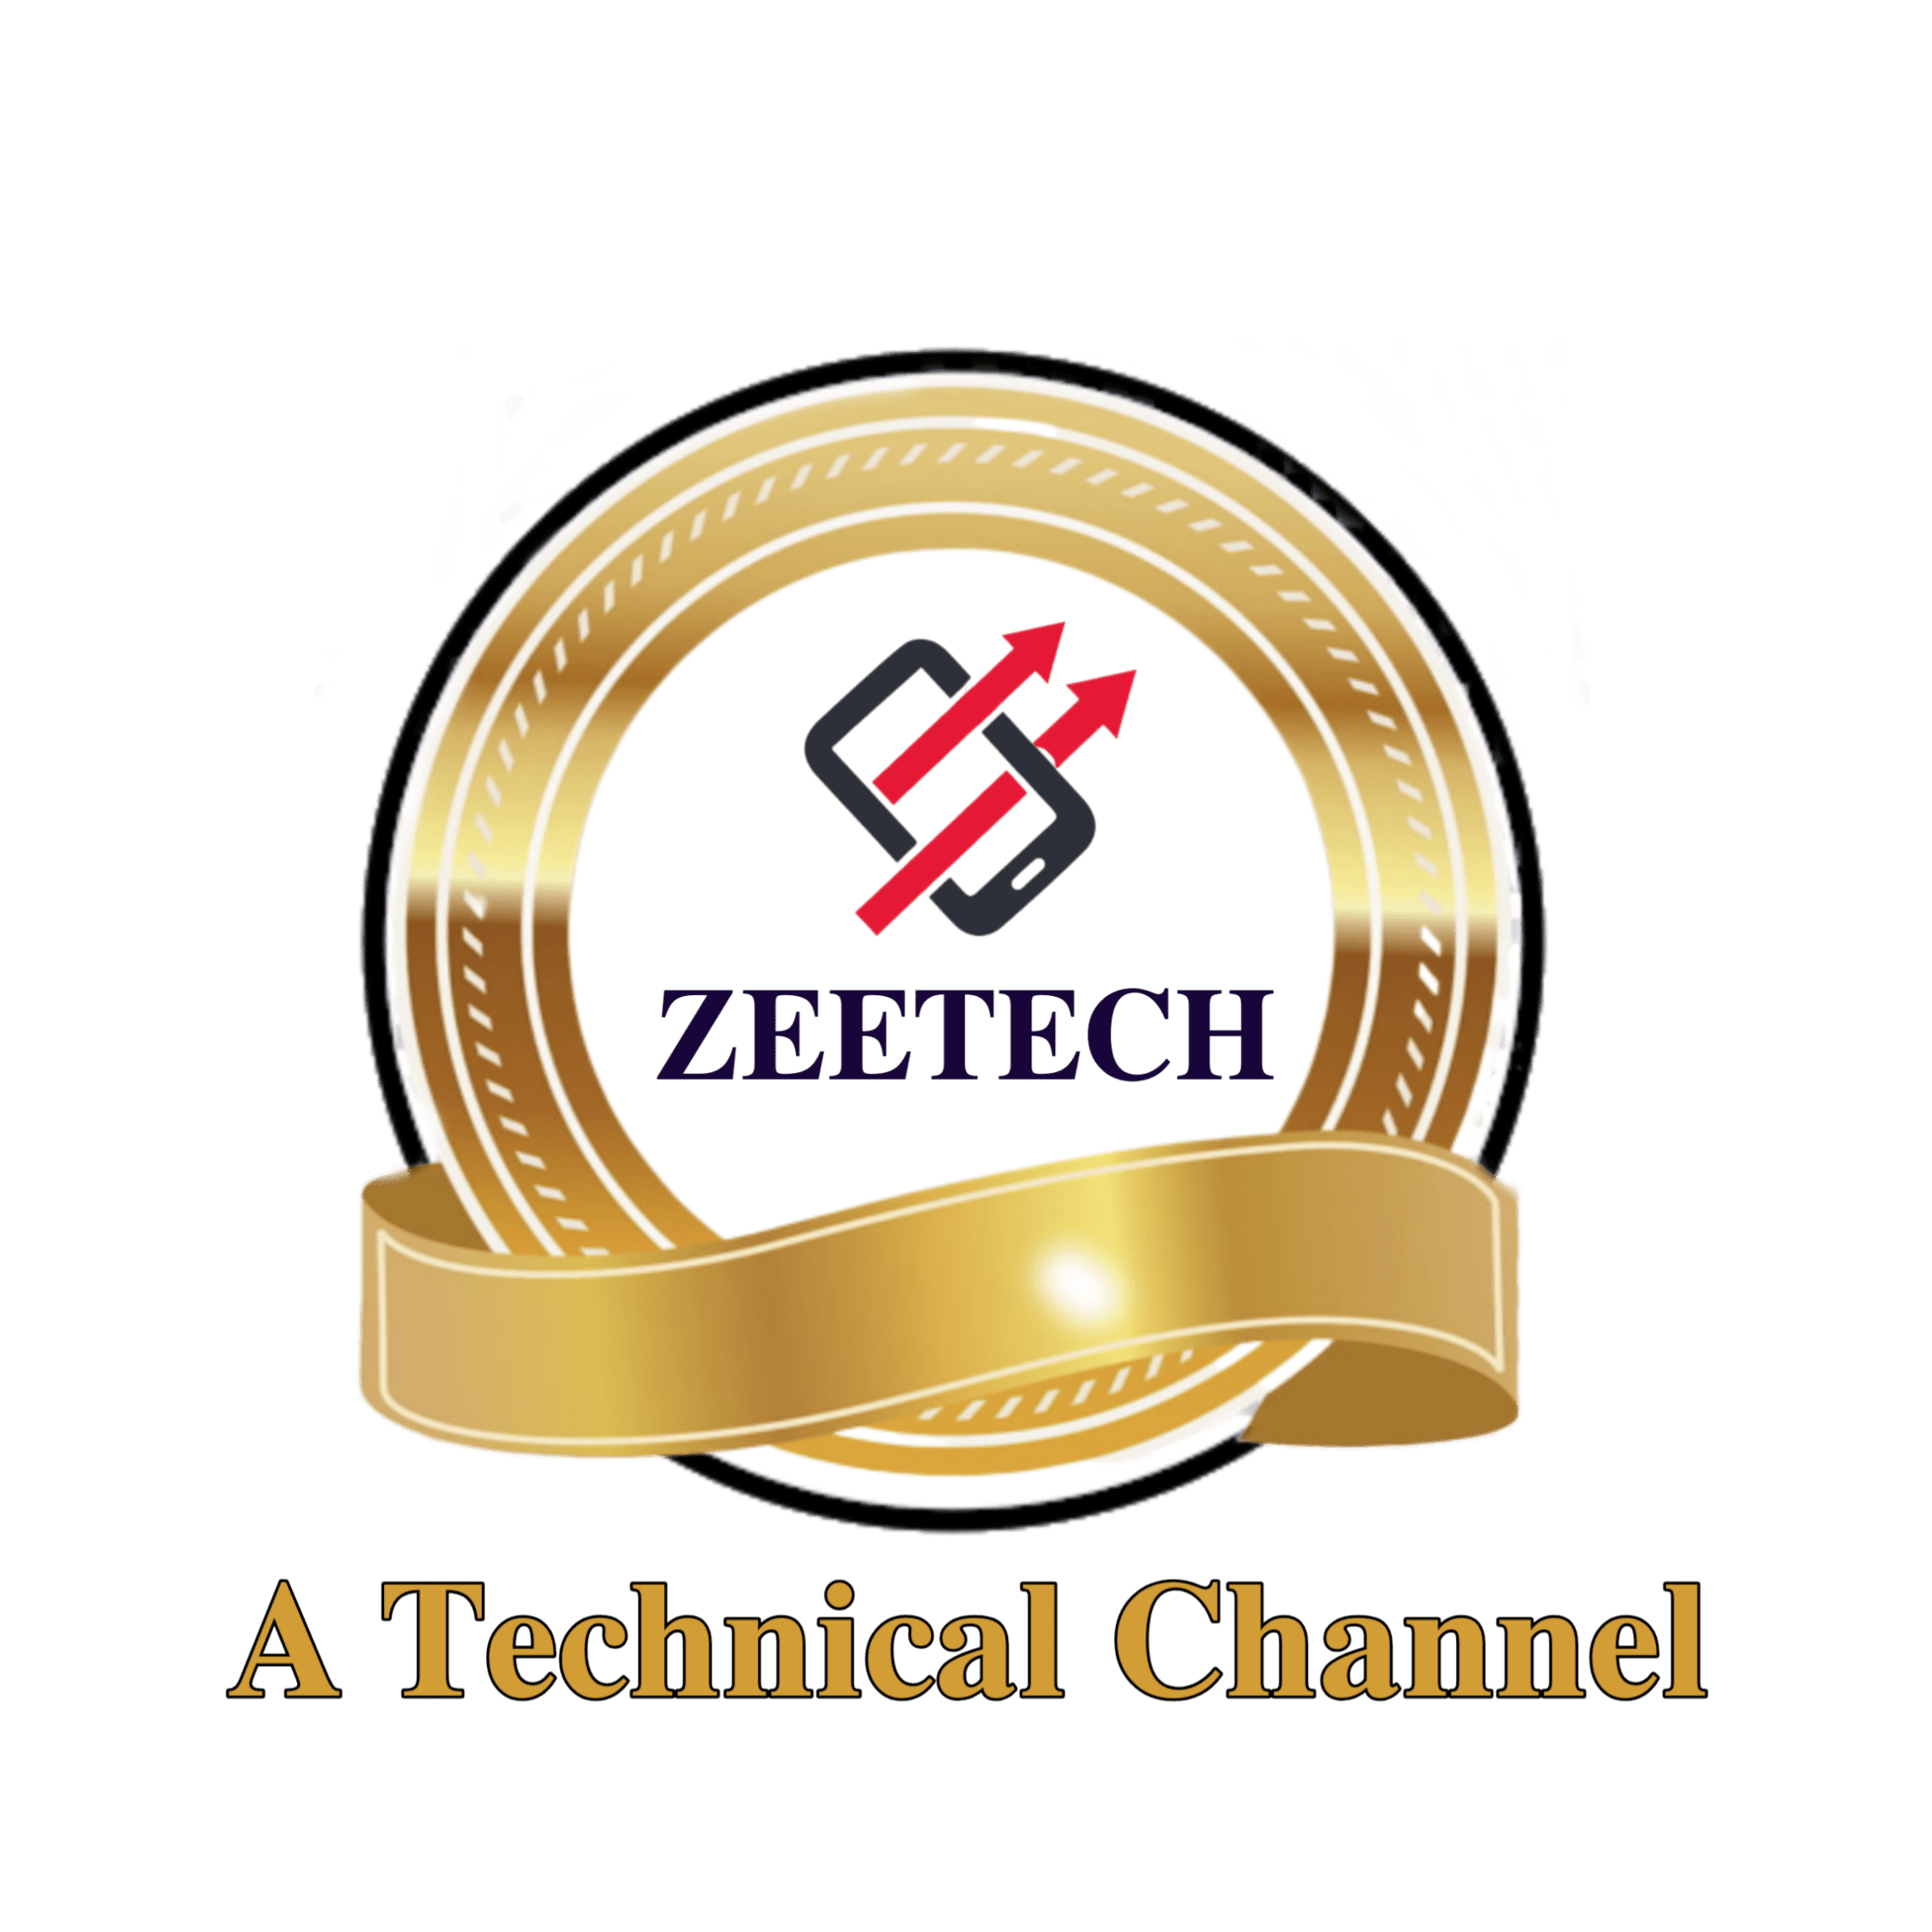 Zeetech A Technical Channel